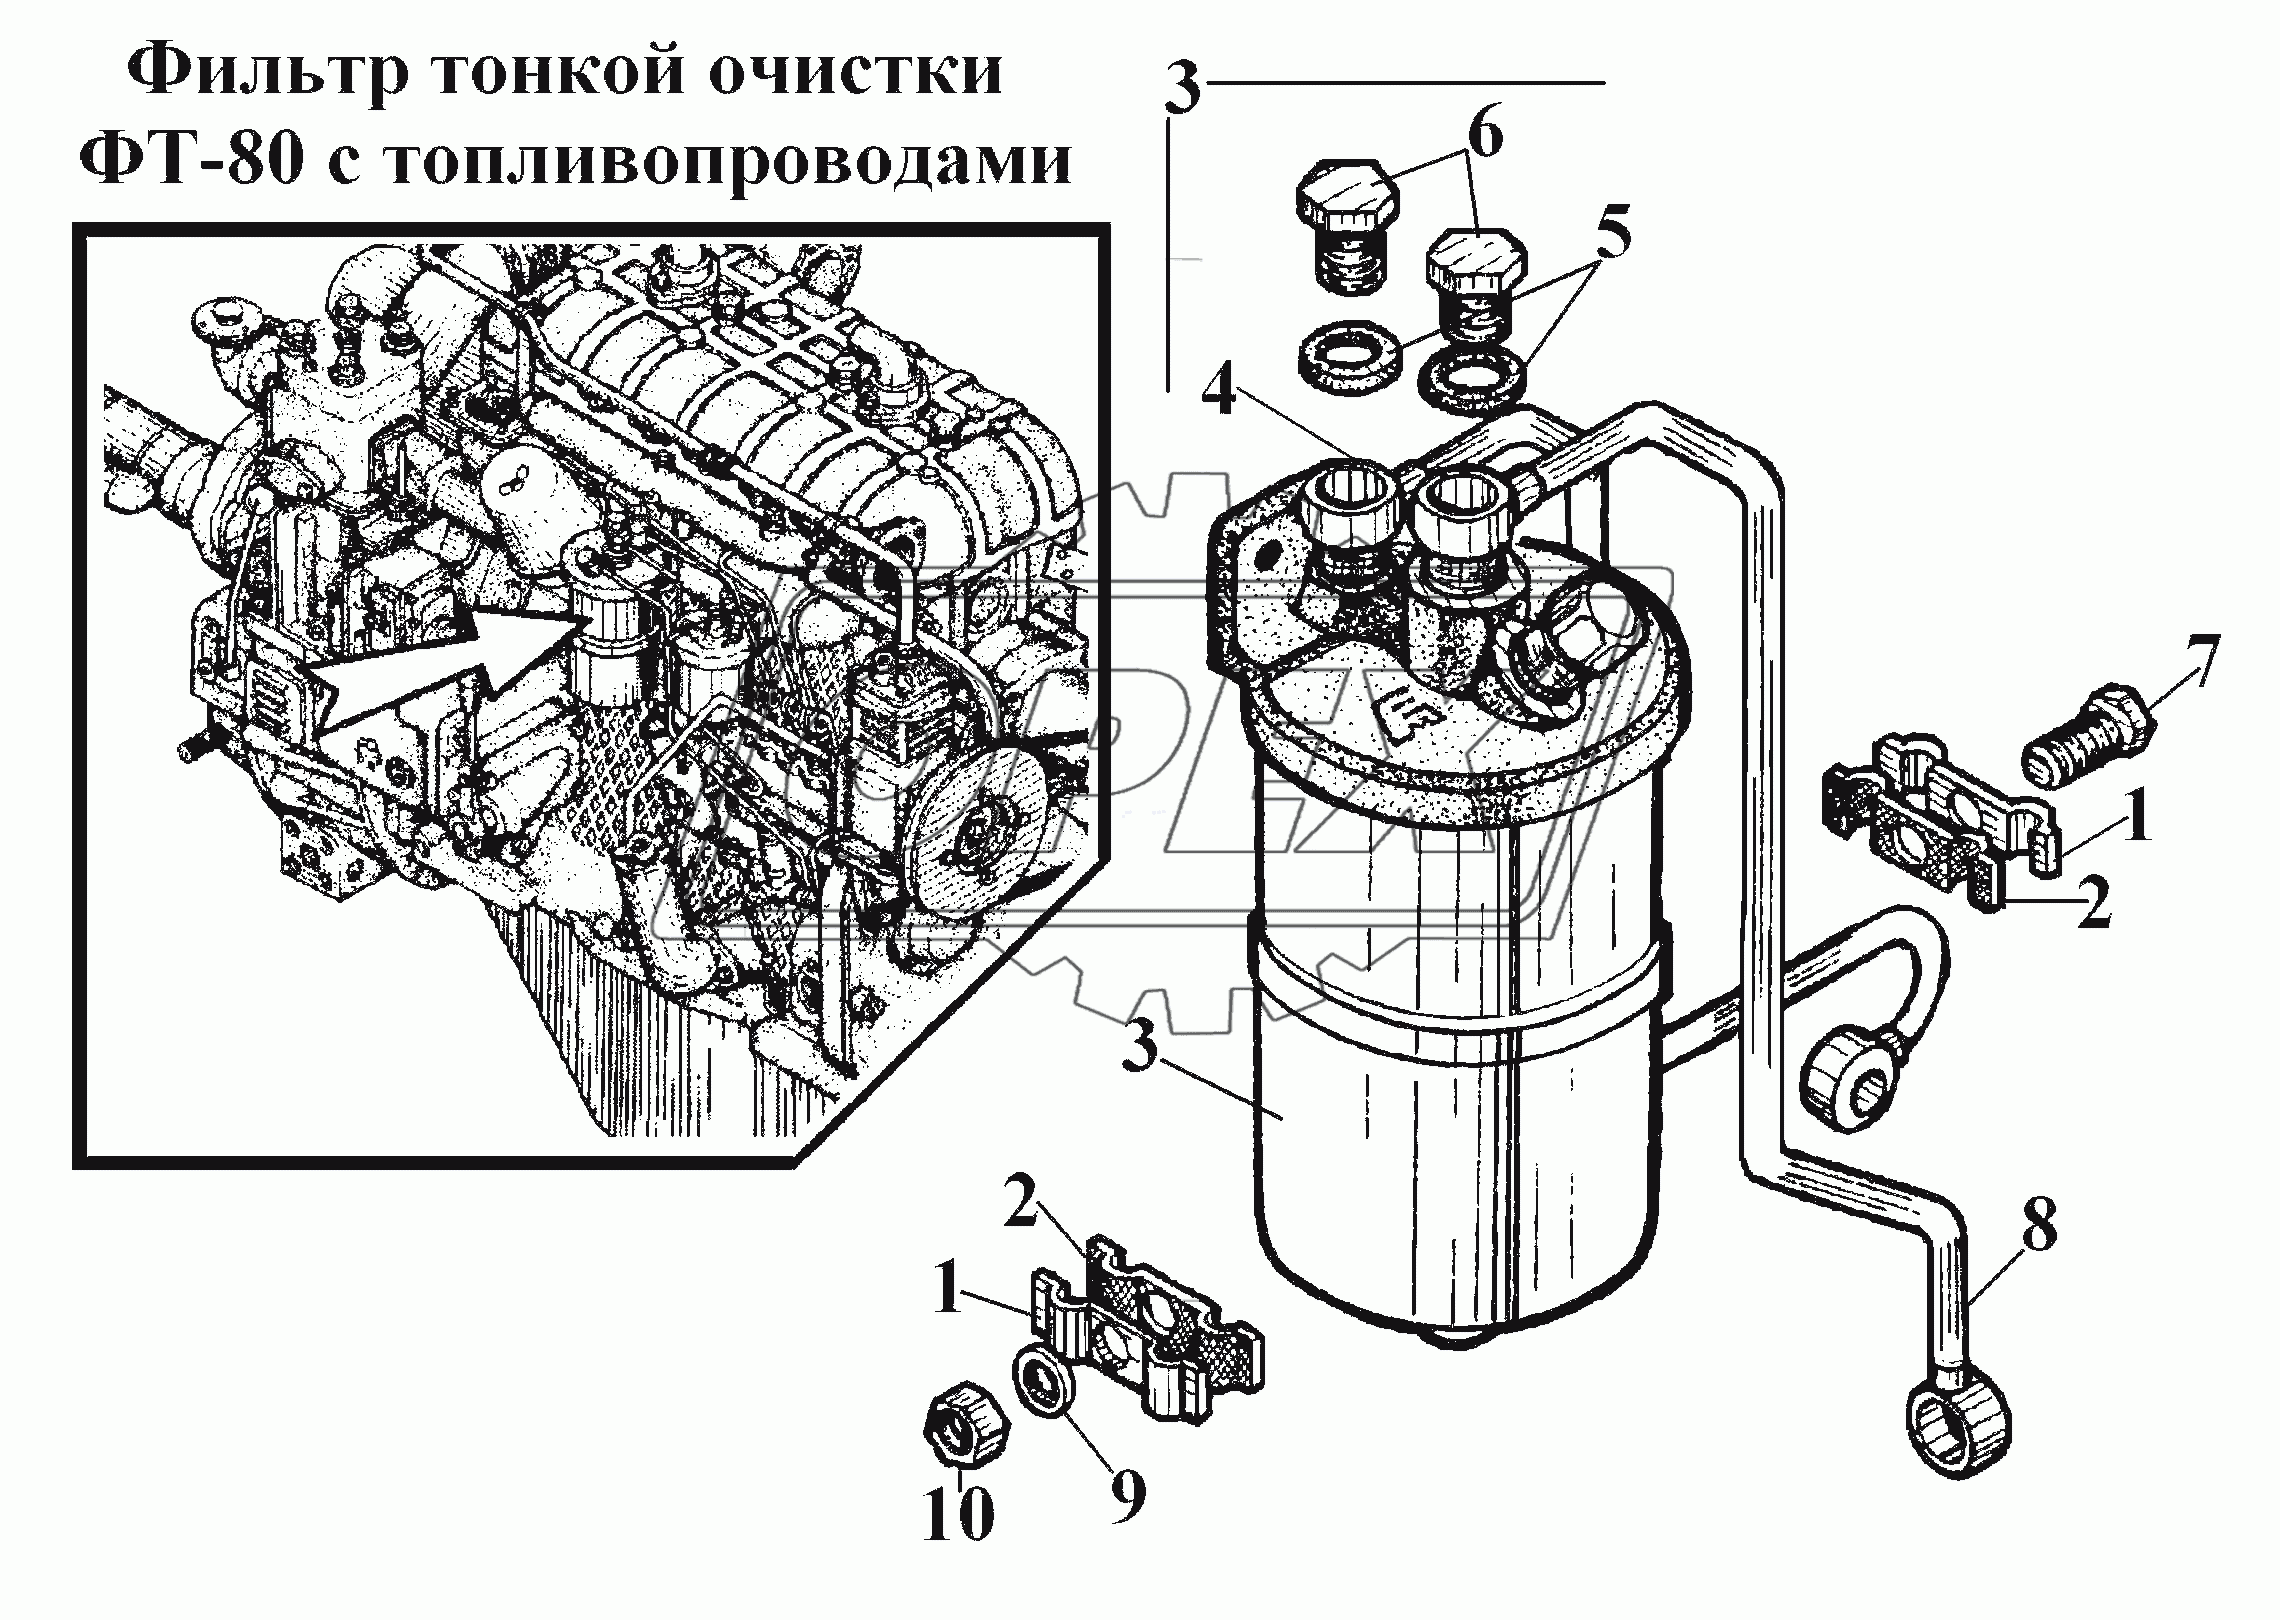 Фильтр тонкой очистки ФТ-80 с топливопроводами